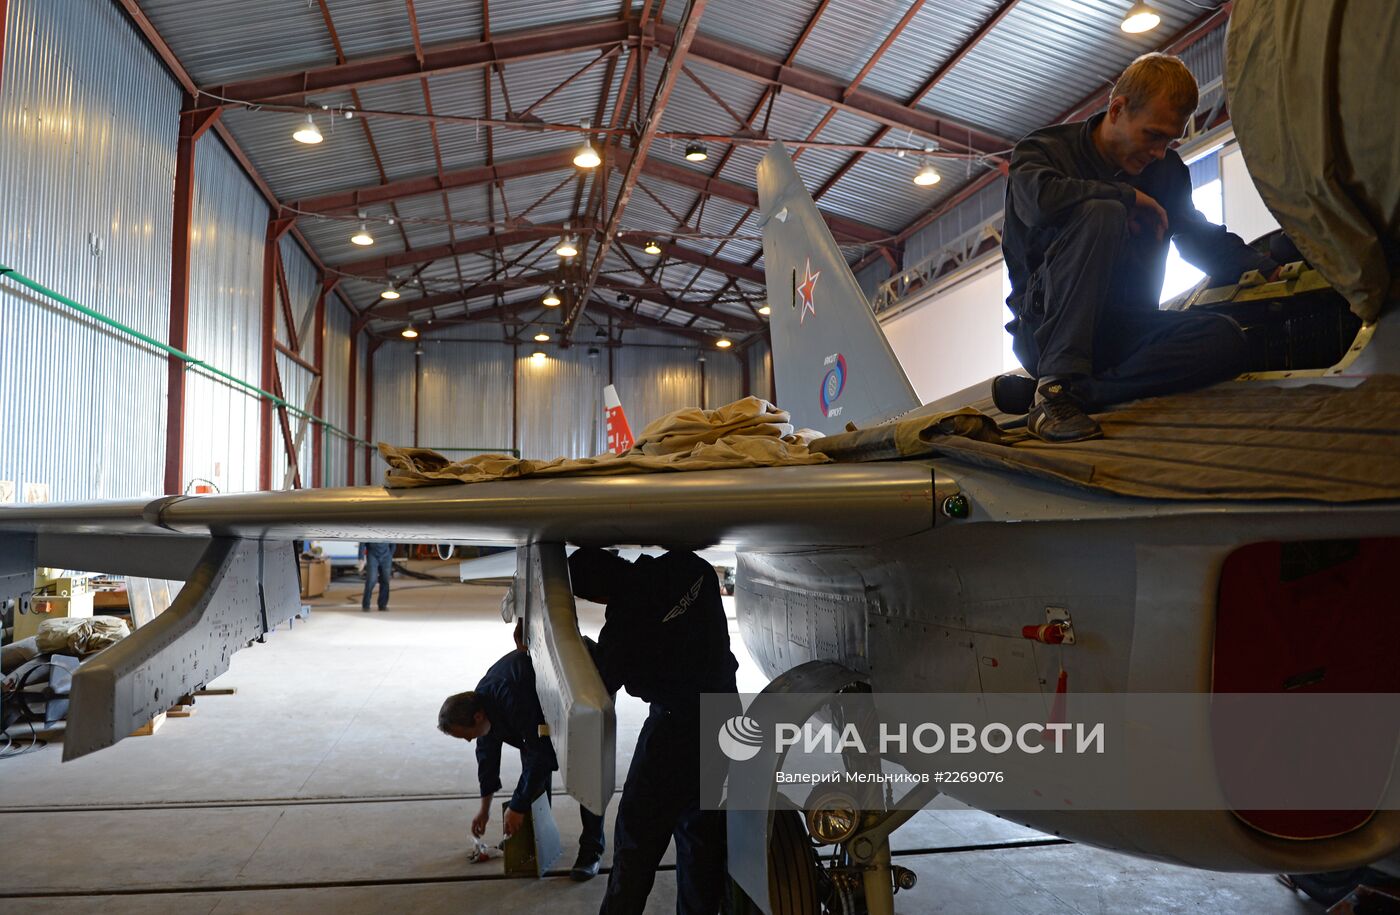 Як-130 в новой-старой ливрее фирмы Яковлева